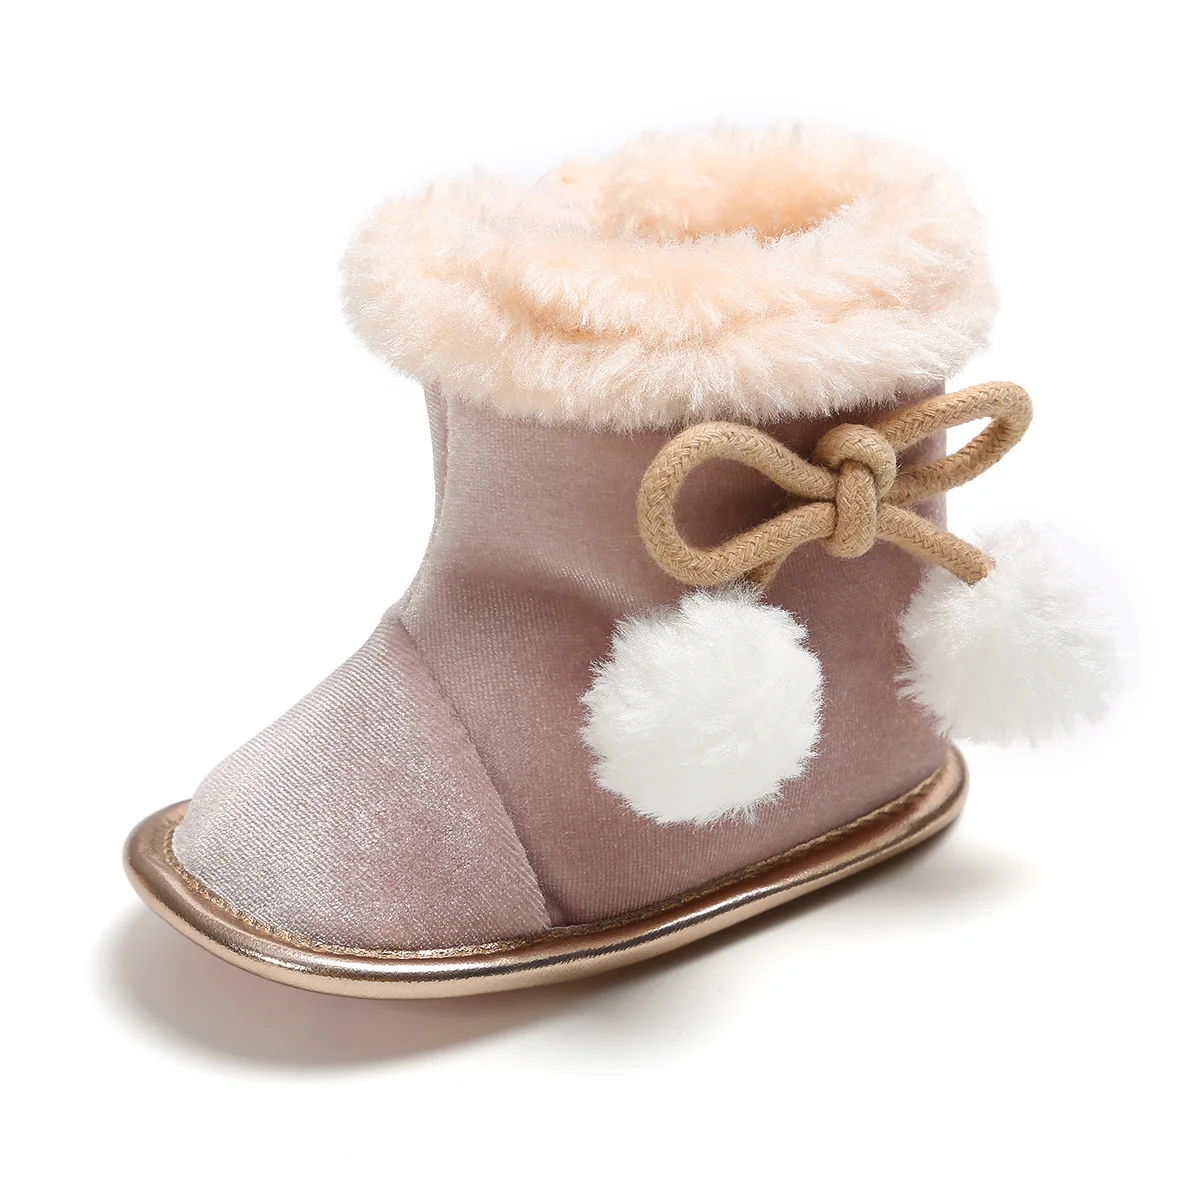 CYSINCOS/детская обувь на возраст от 0 до 18 месяцев теплые зимние ботинки новая обувь с мягкой подошвой для маленьких детей Нескользящие меховые плюшевые ботинки для первых шагов для мальчиков и девочек